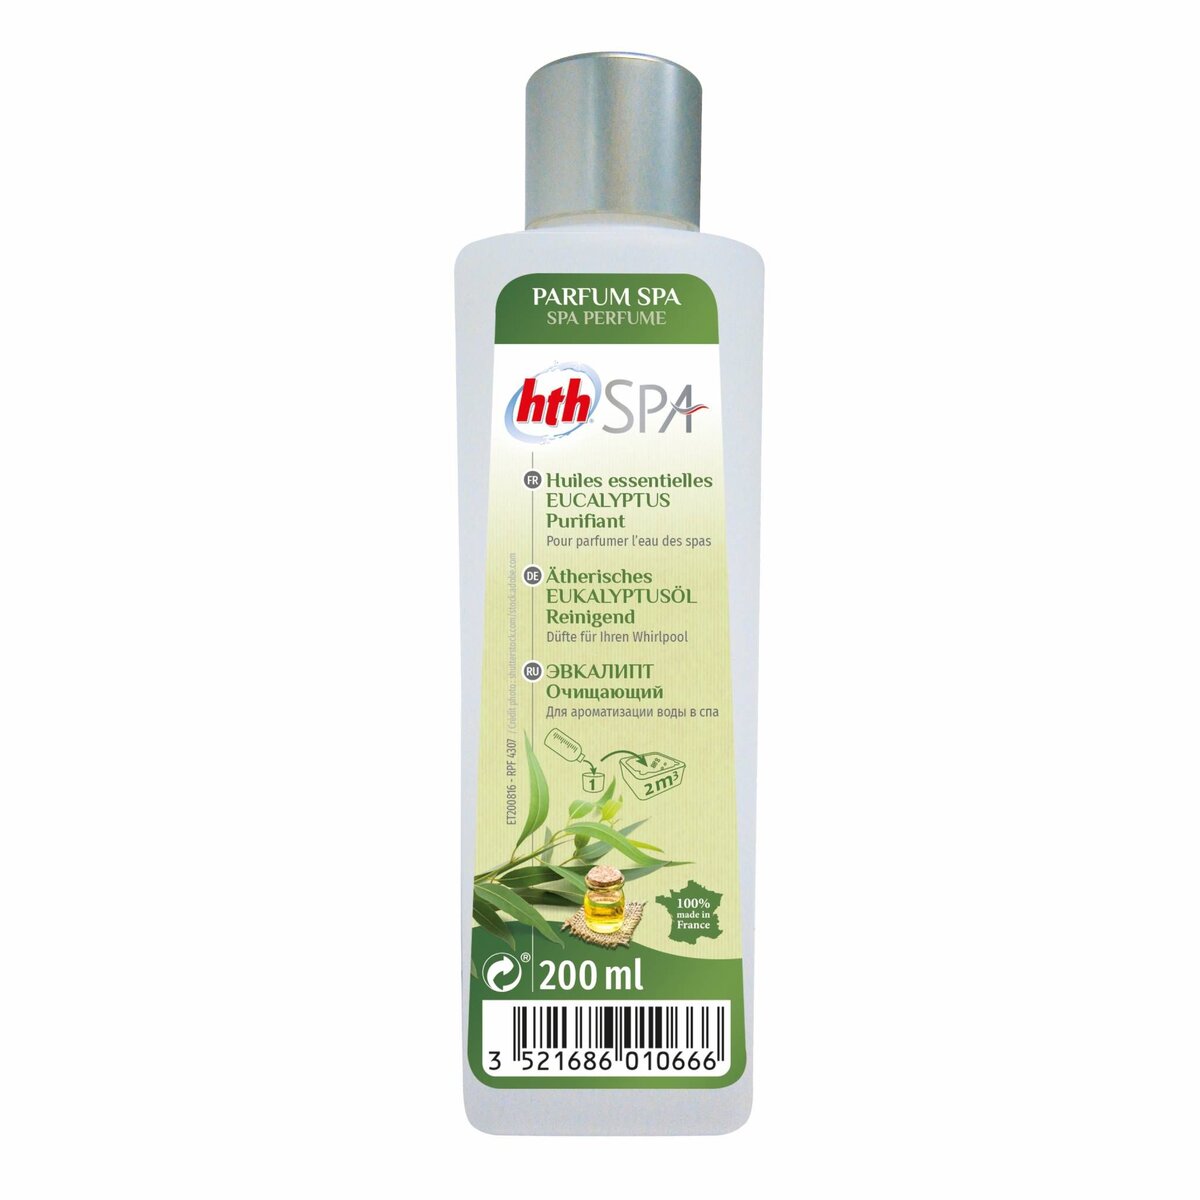 SWEEEK Parfum aux huiles essentielles d'eucalyptus pour SPA 200mL – HTH. odeur purifiante. parfum d'origine naturelle. élaboré en France